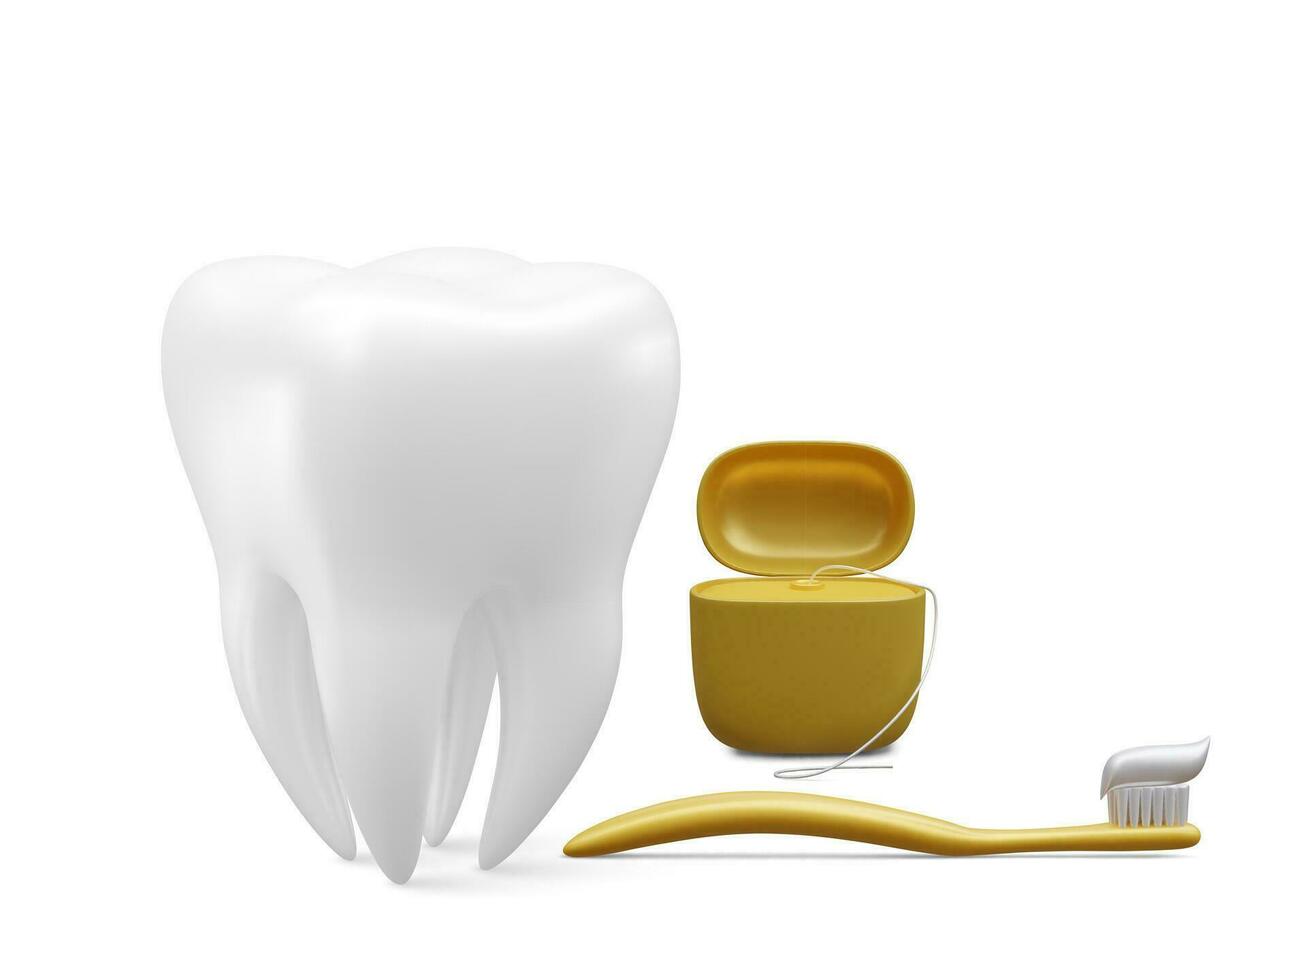 realistisch tand en tandheelkundig gereedschap voor tanden geïsoleerd Aan wit achtergrond. medisch tandarts hulpmiddel. tandheelkunde, gezondheidszorg, hygiëne concept. vector illustratie